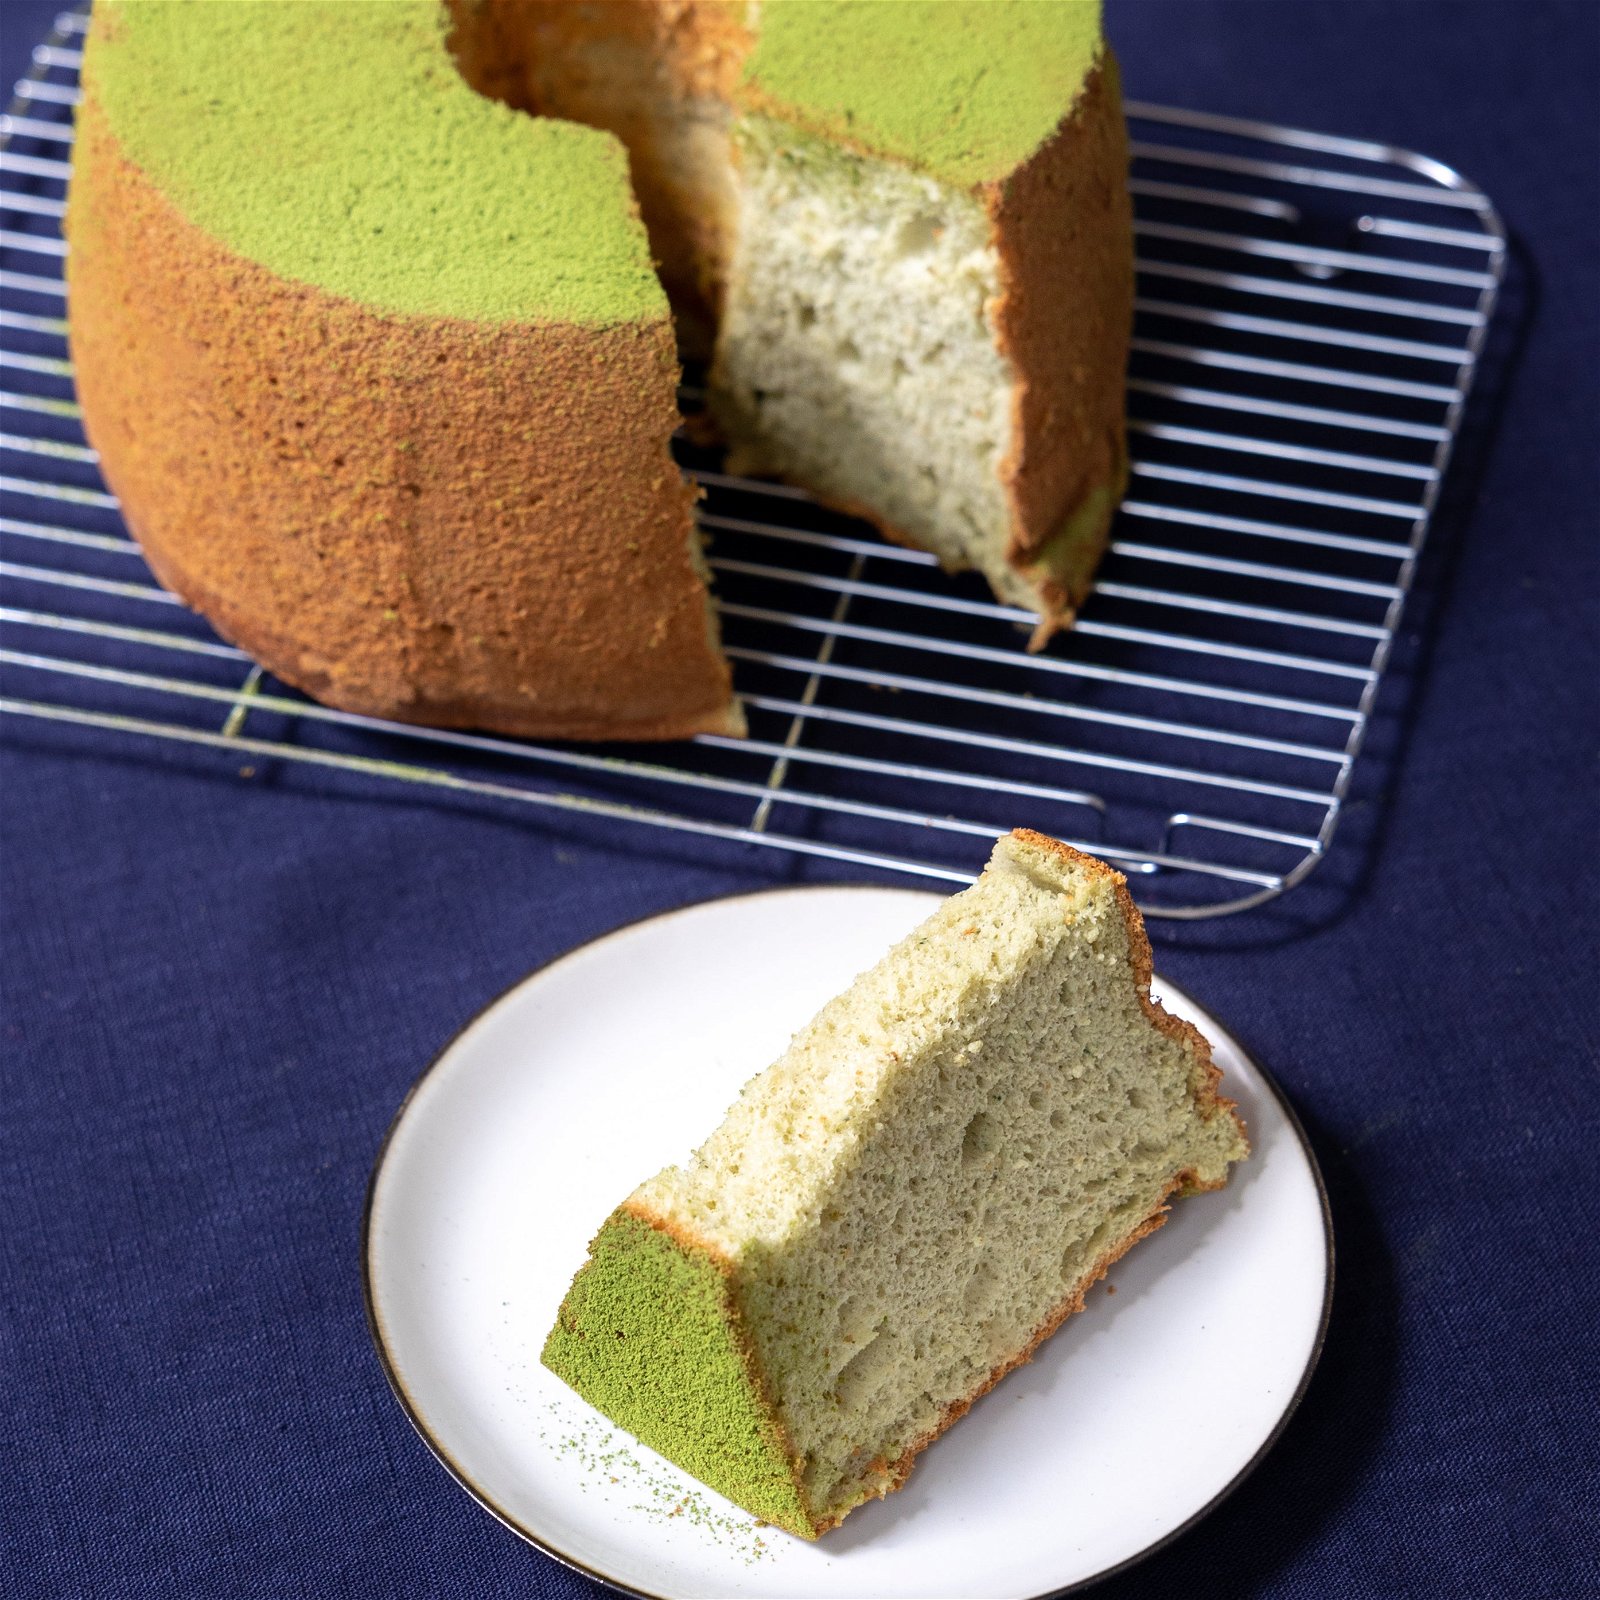 Image of Recette chiffon cake au matcha